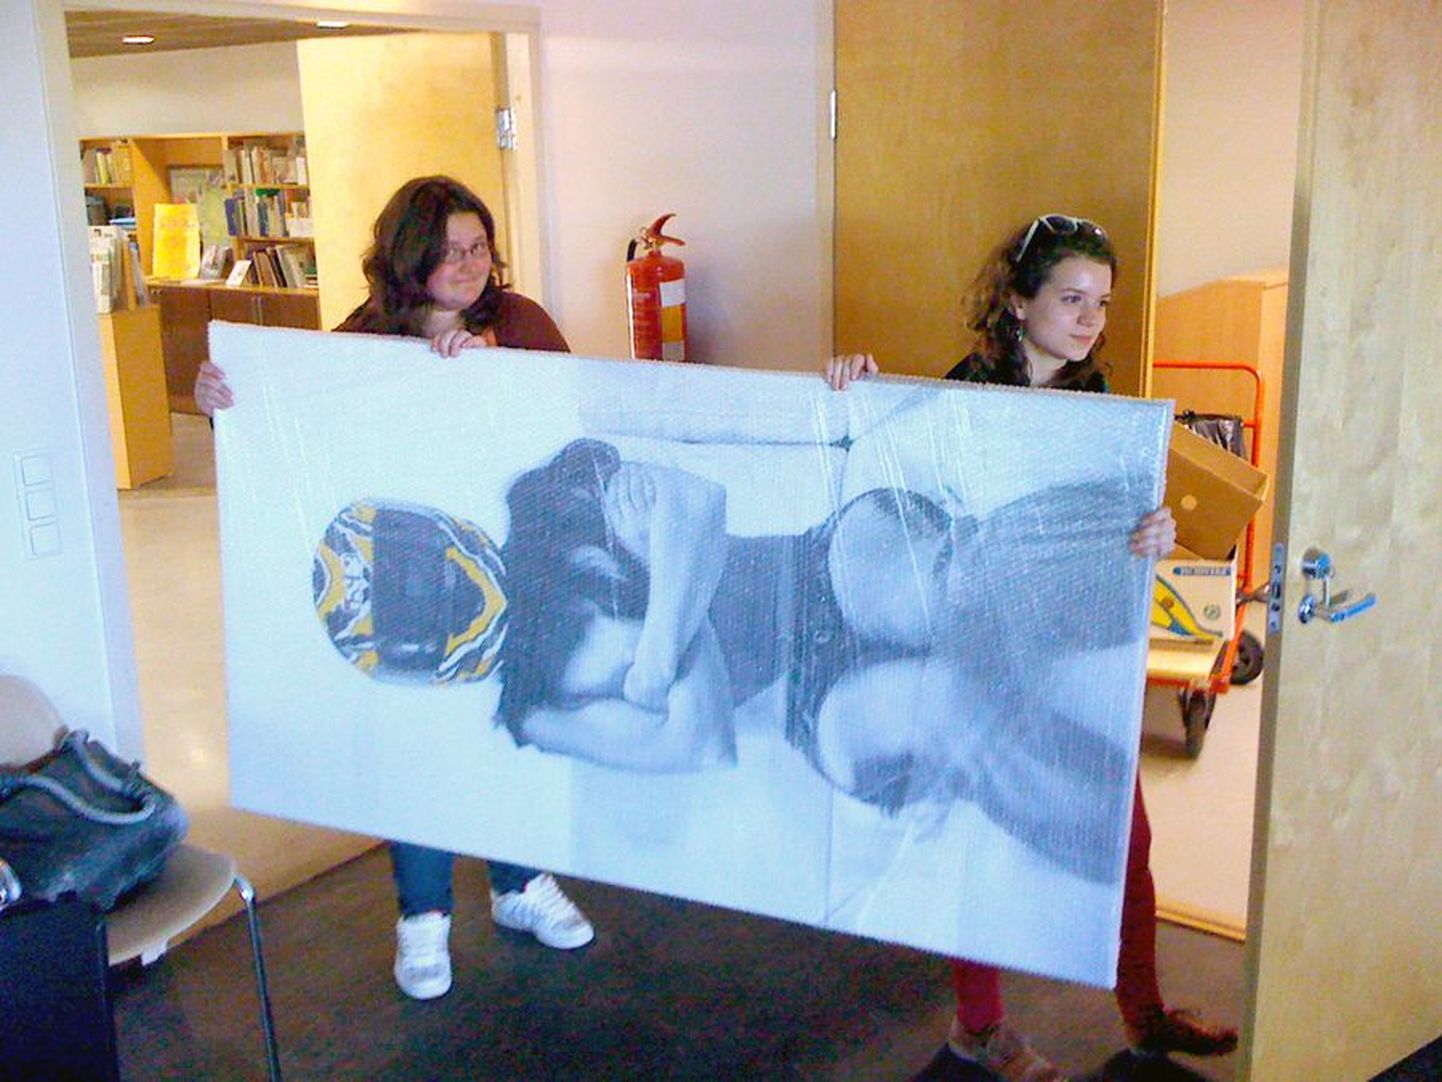 Kunstikooli õpilased Rita Puhu ja Kerly Ritval (paremal) tassivad näitusetöid galeriisse.